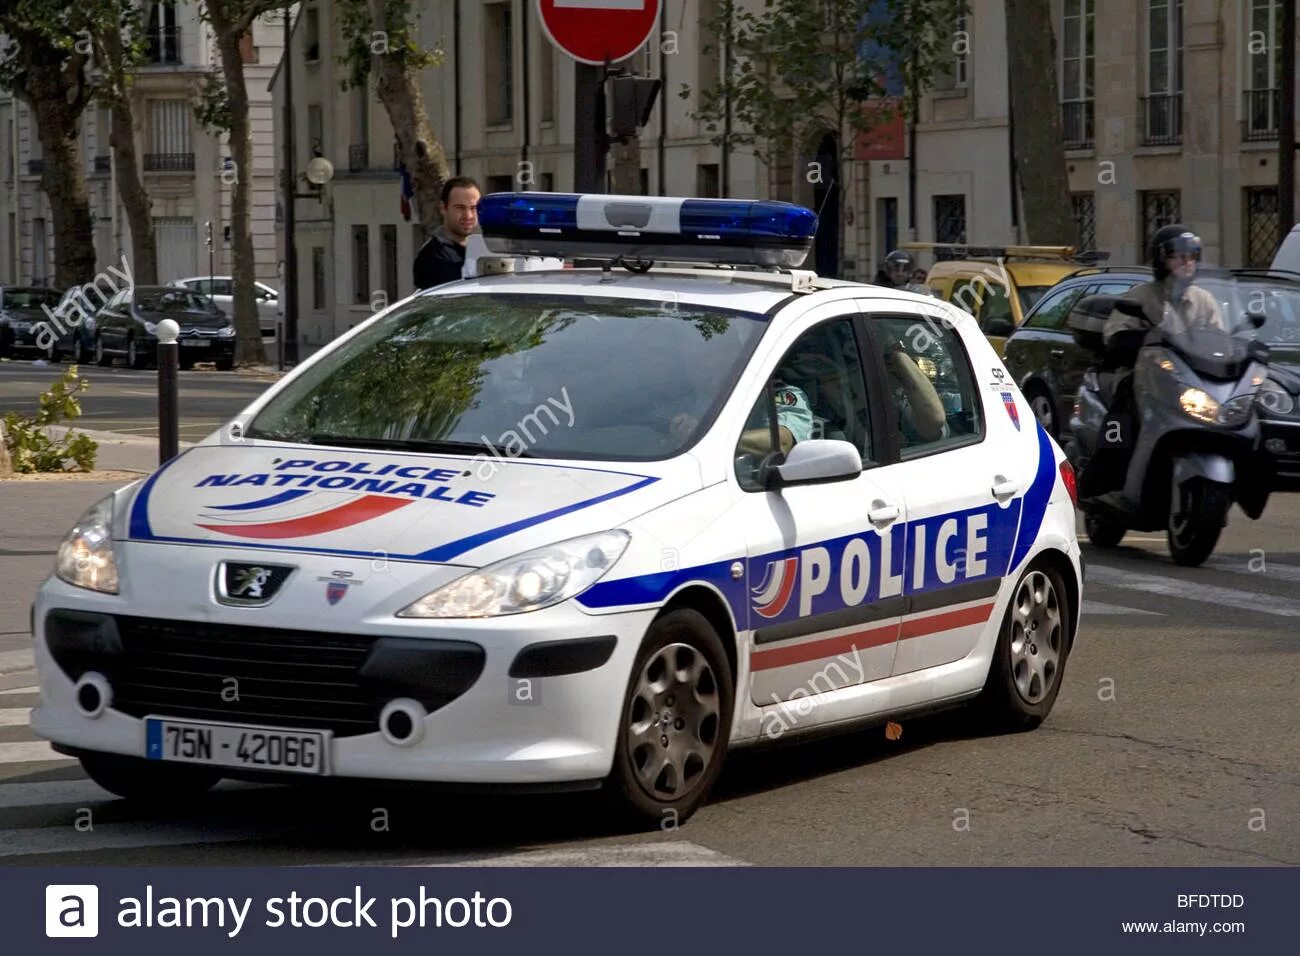 Peugeot 407 Police. Французская Полицейская машина. Полицейские автомобили Франции. Полиция Франции машины. Нужен номер франции